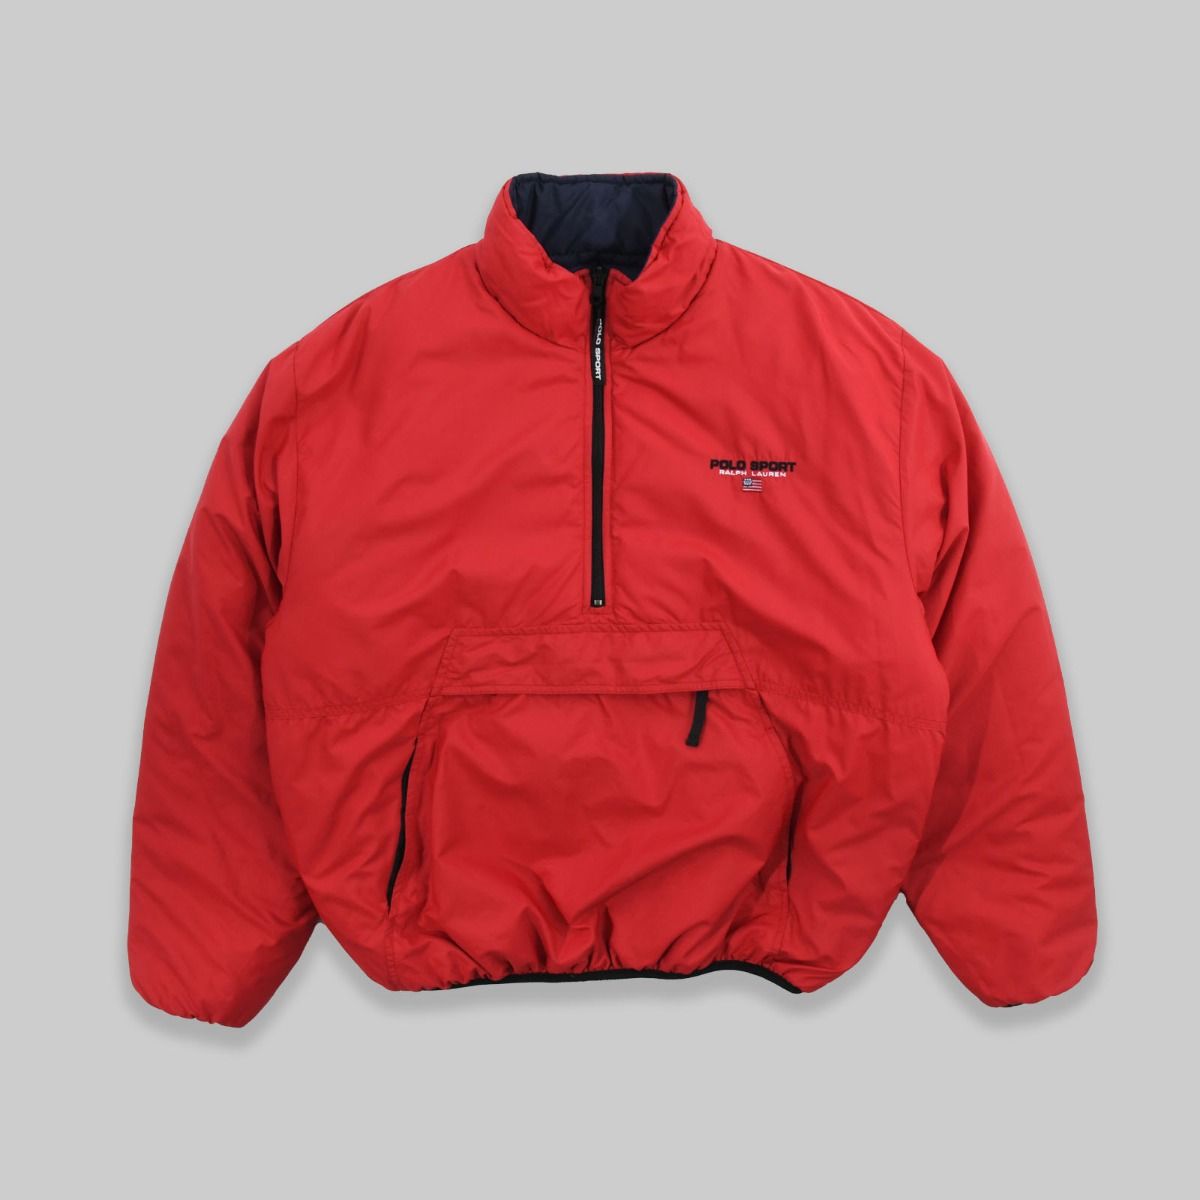 Ralph Lauren Polo Sport Half-Zip Padded Jacket